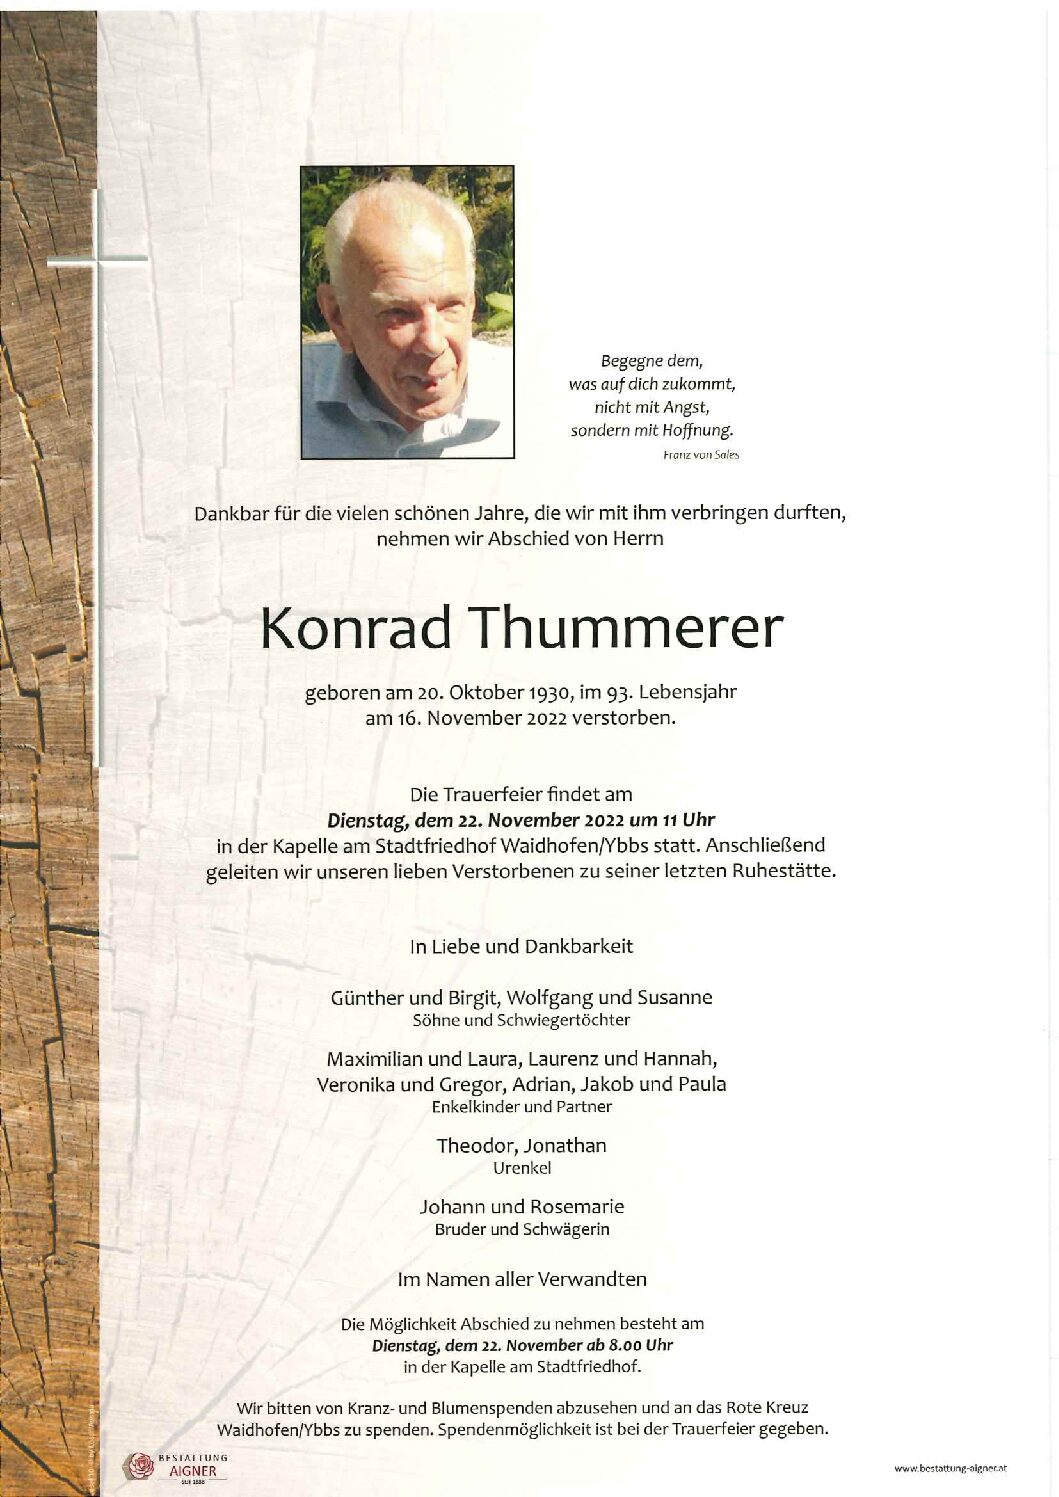 Konrad Thummerer